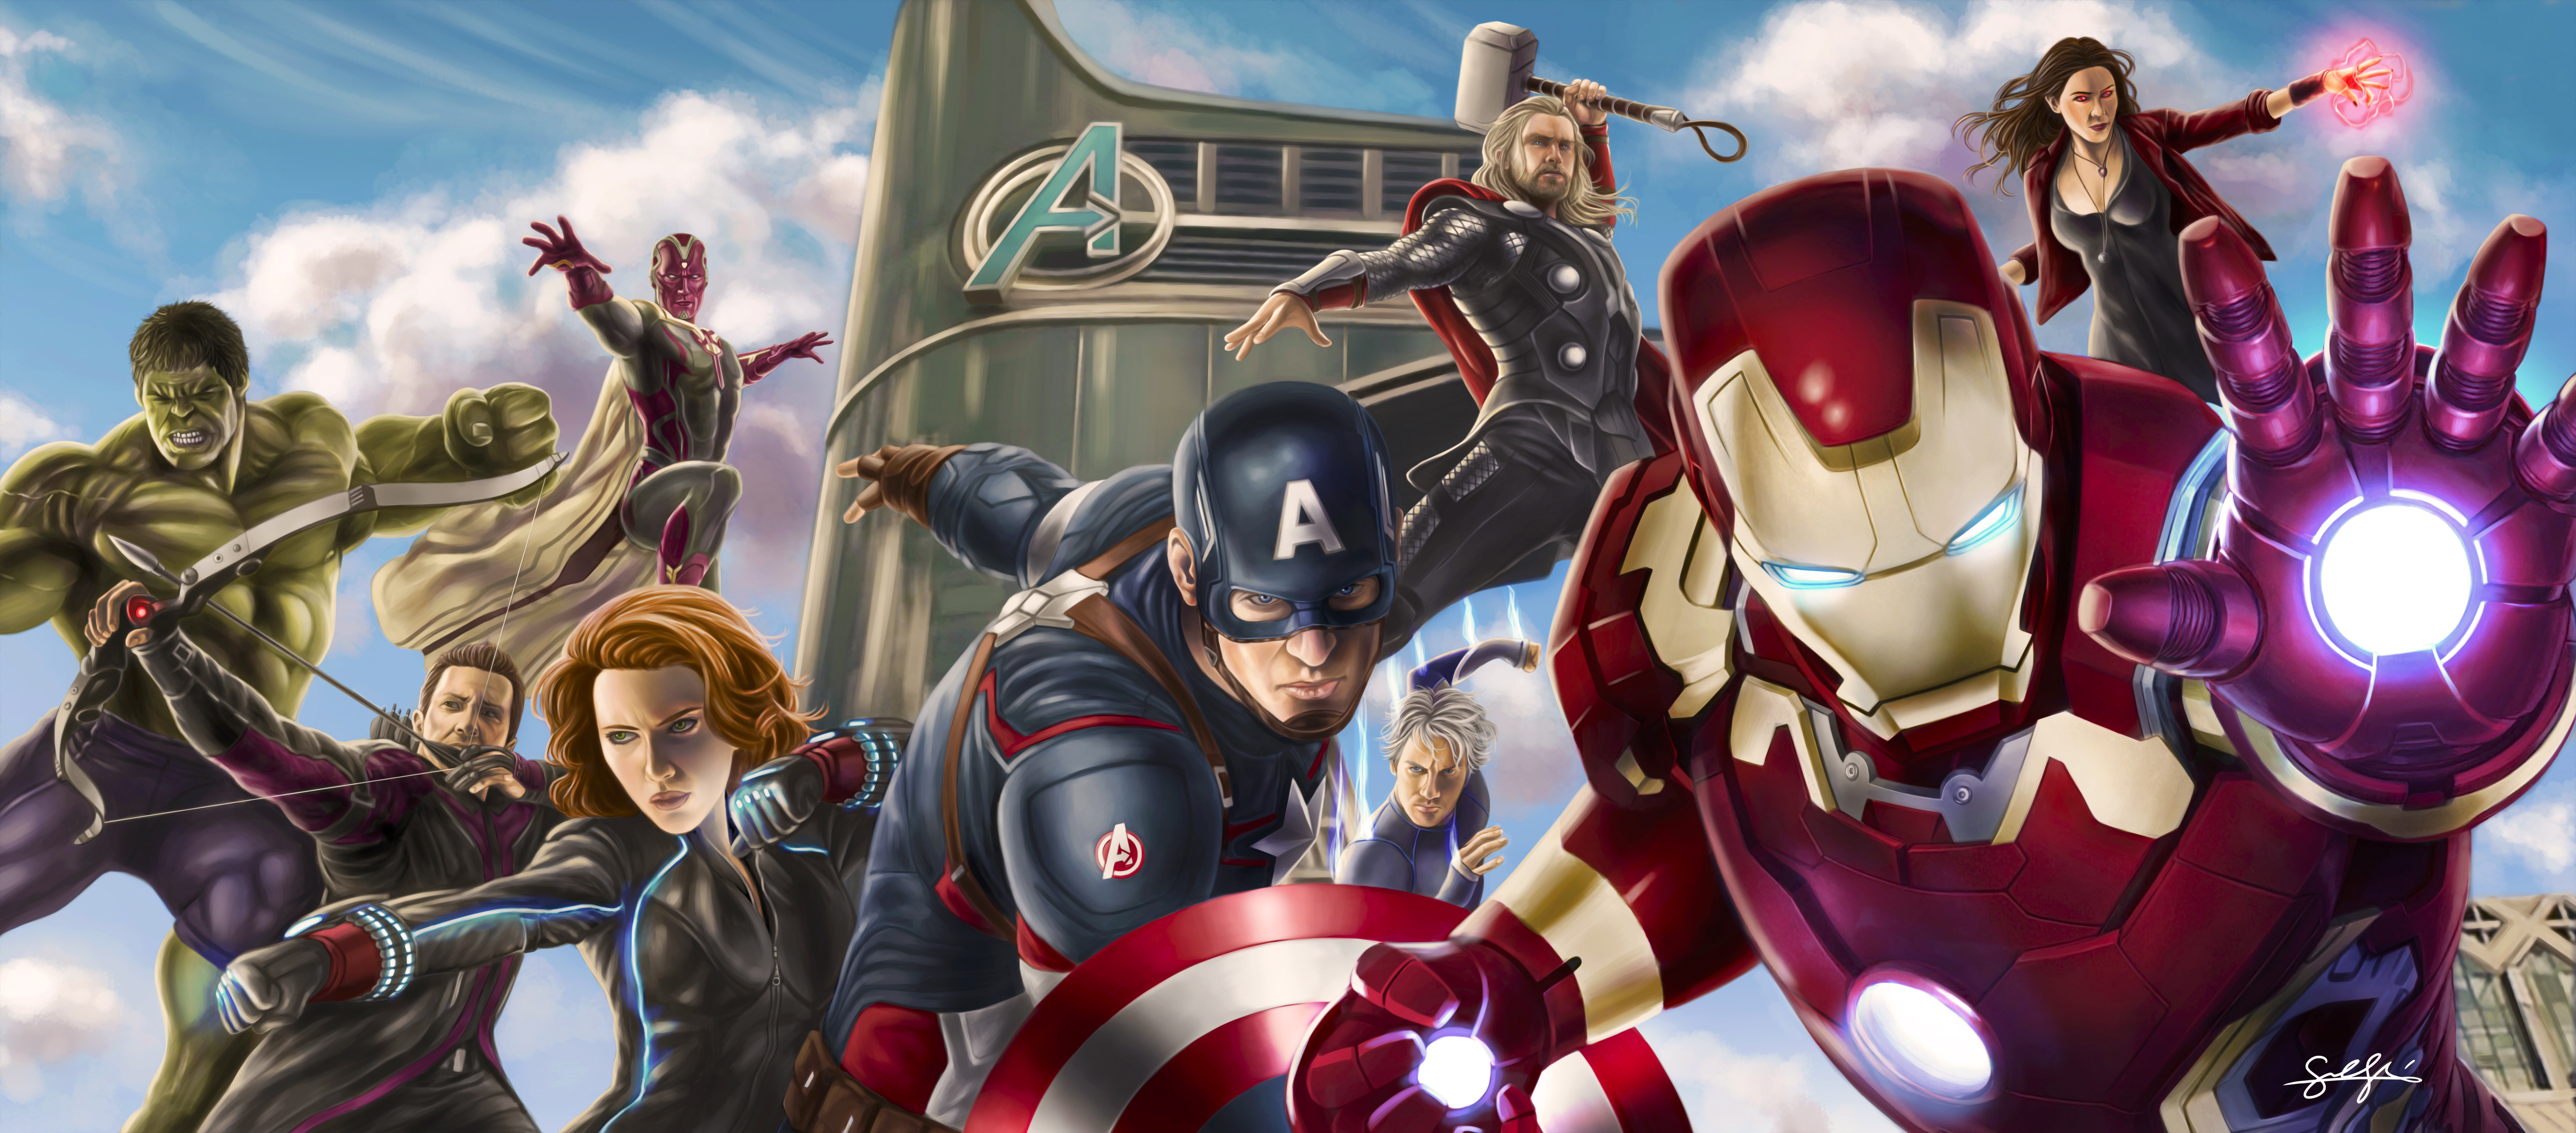 Avengers Wallpaper 4K Animated : Avengers 4K Wallpaper (53+ images